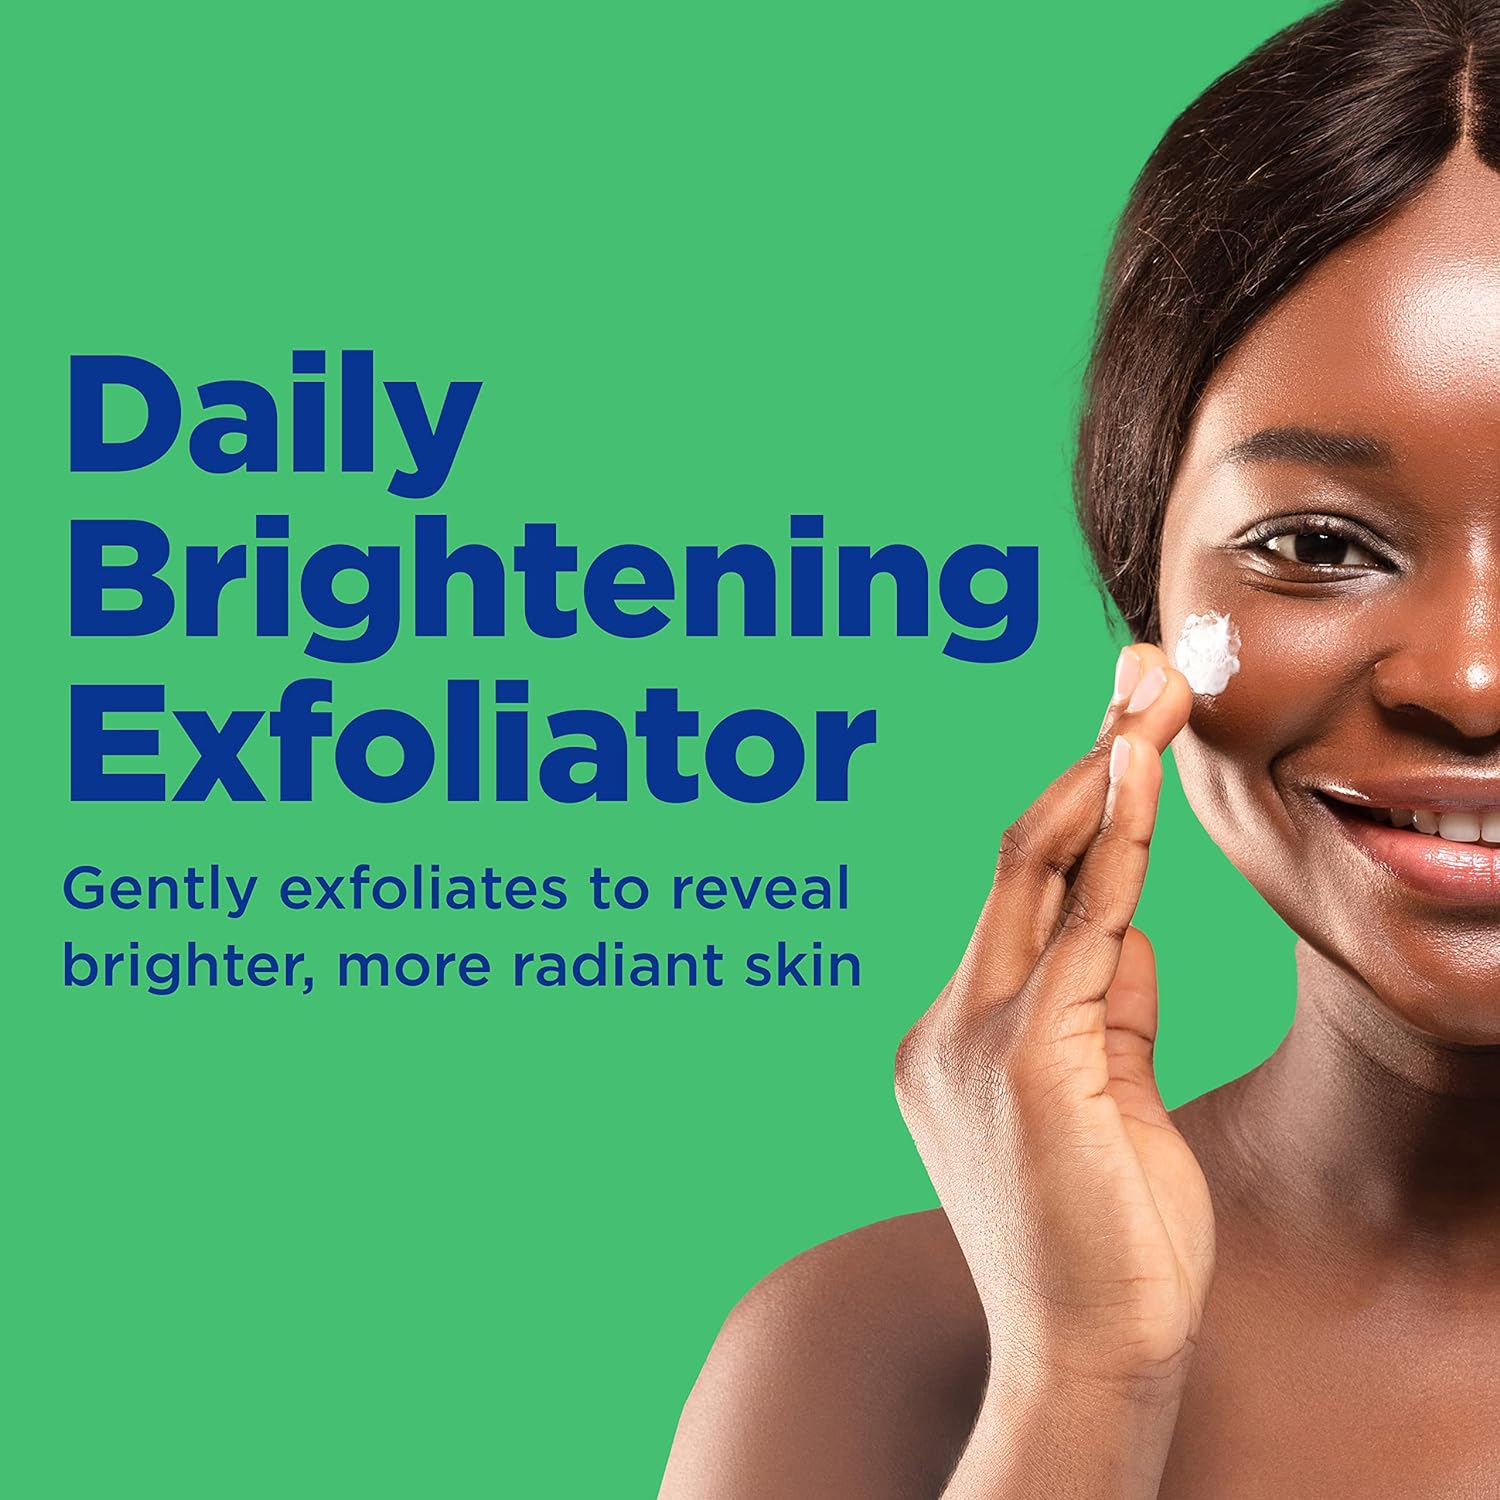 Esupli.com Differin Face Scrub Daily Brightening Exfoliator, Improves T